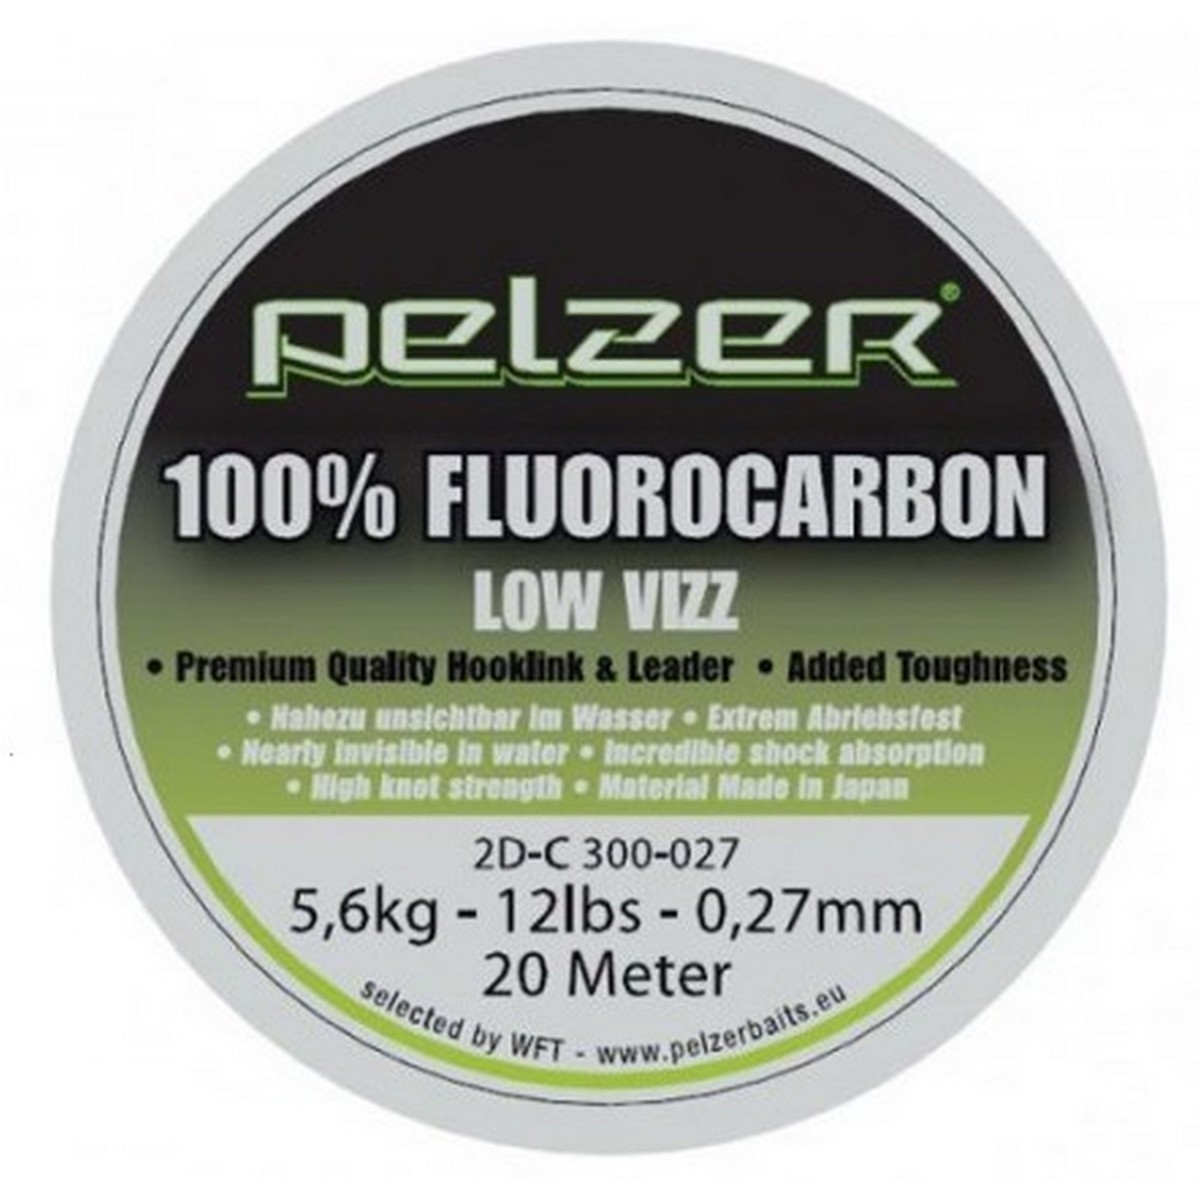 Риболовно влакно Pelzer 100% Fluorocarbon 20м